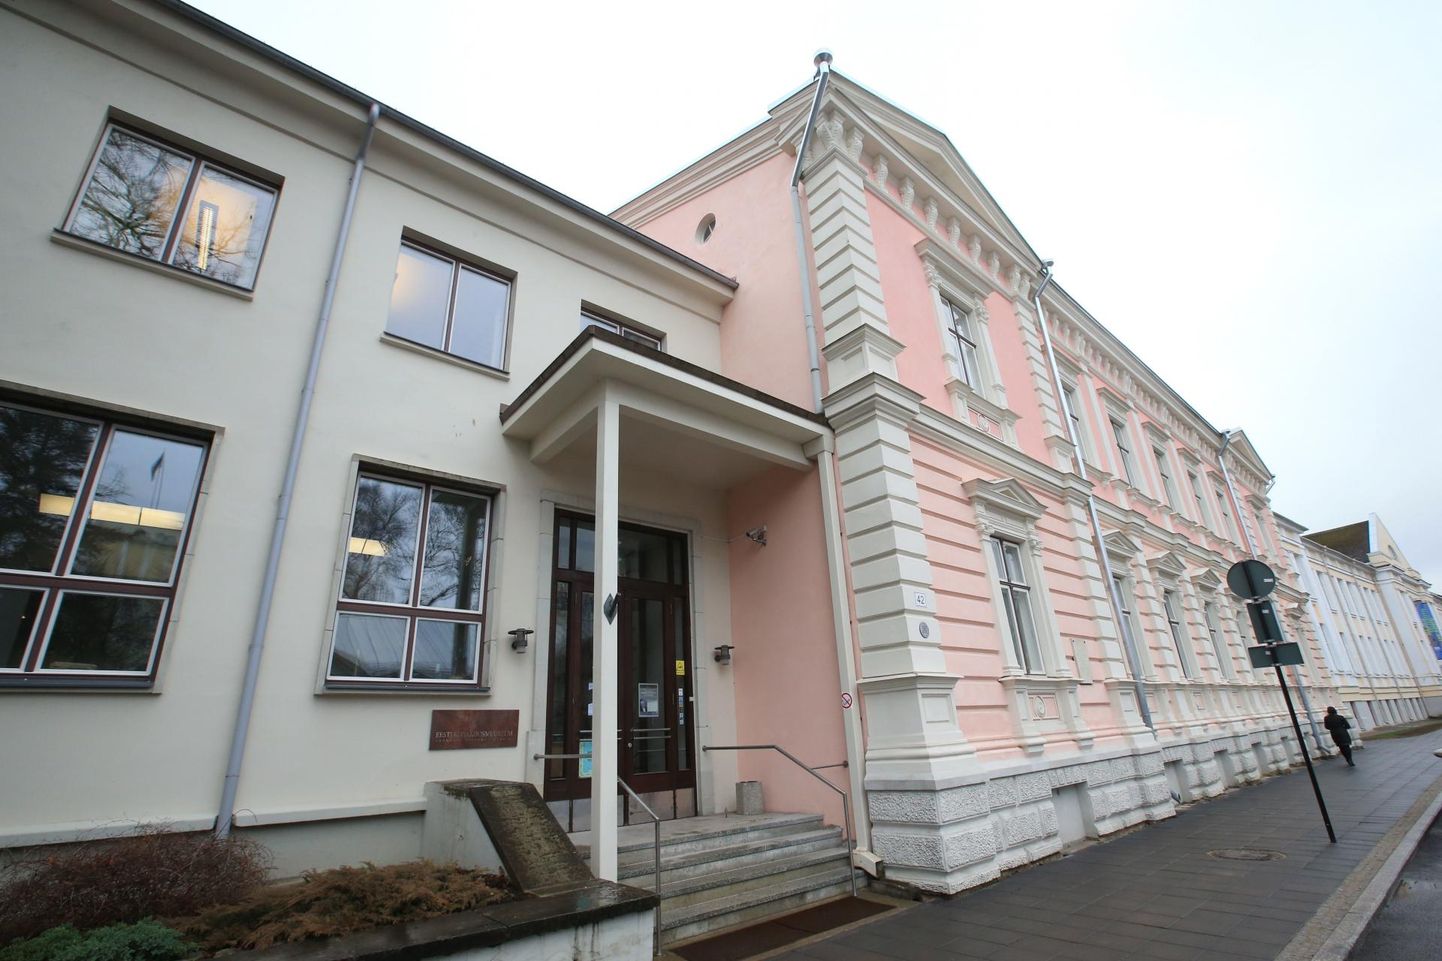 Eesti kirjandusmuuseum.